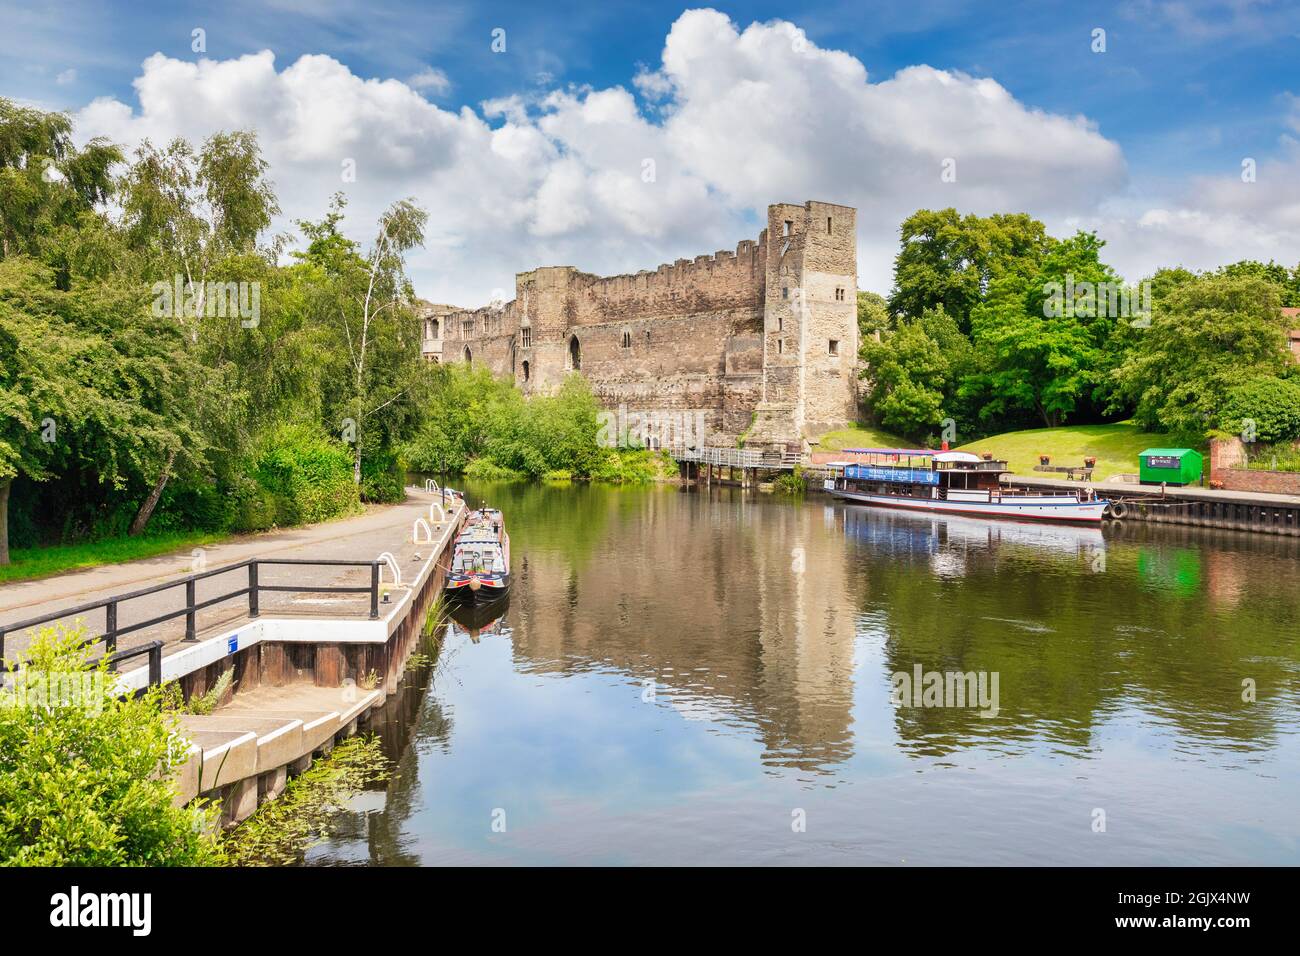 4 luglio 2019: Newark on Trent, Nottinghamshire, Regno Unito - Castello di Newark, accanto al fiume Trent, con barche ormeggiate al molo. Foto Stock